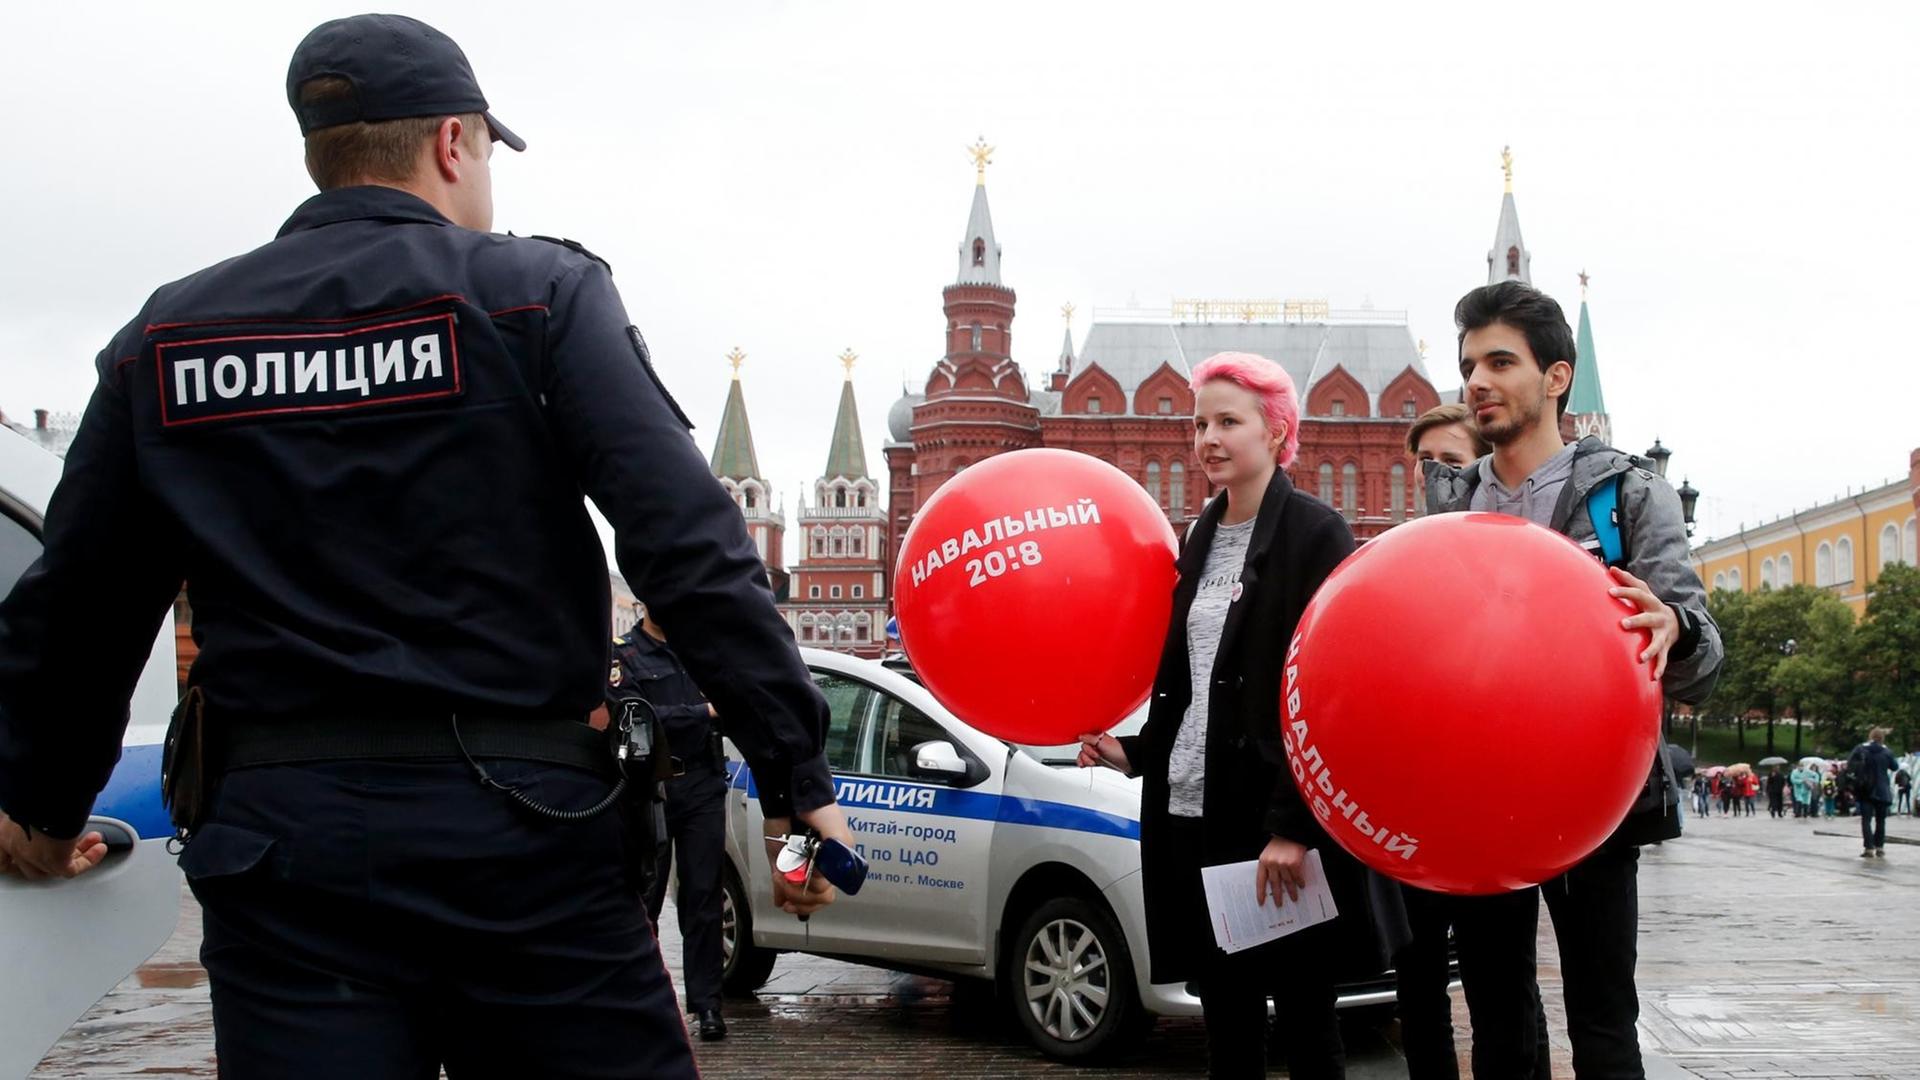 Unterstützer des Oppositionellen Nawalny sprechen am 8. Juli 2017 mit Polizisten während einer nicht autorisierten Kundgebung im Zentrum von Moskau. Nawalny war nach 25 Tagen Haft freigelassen worden.